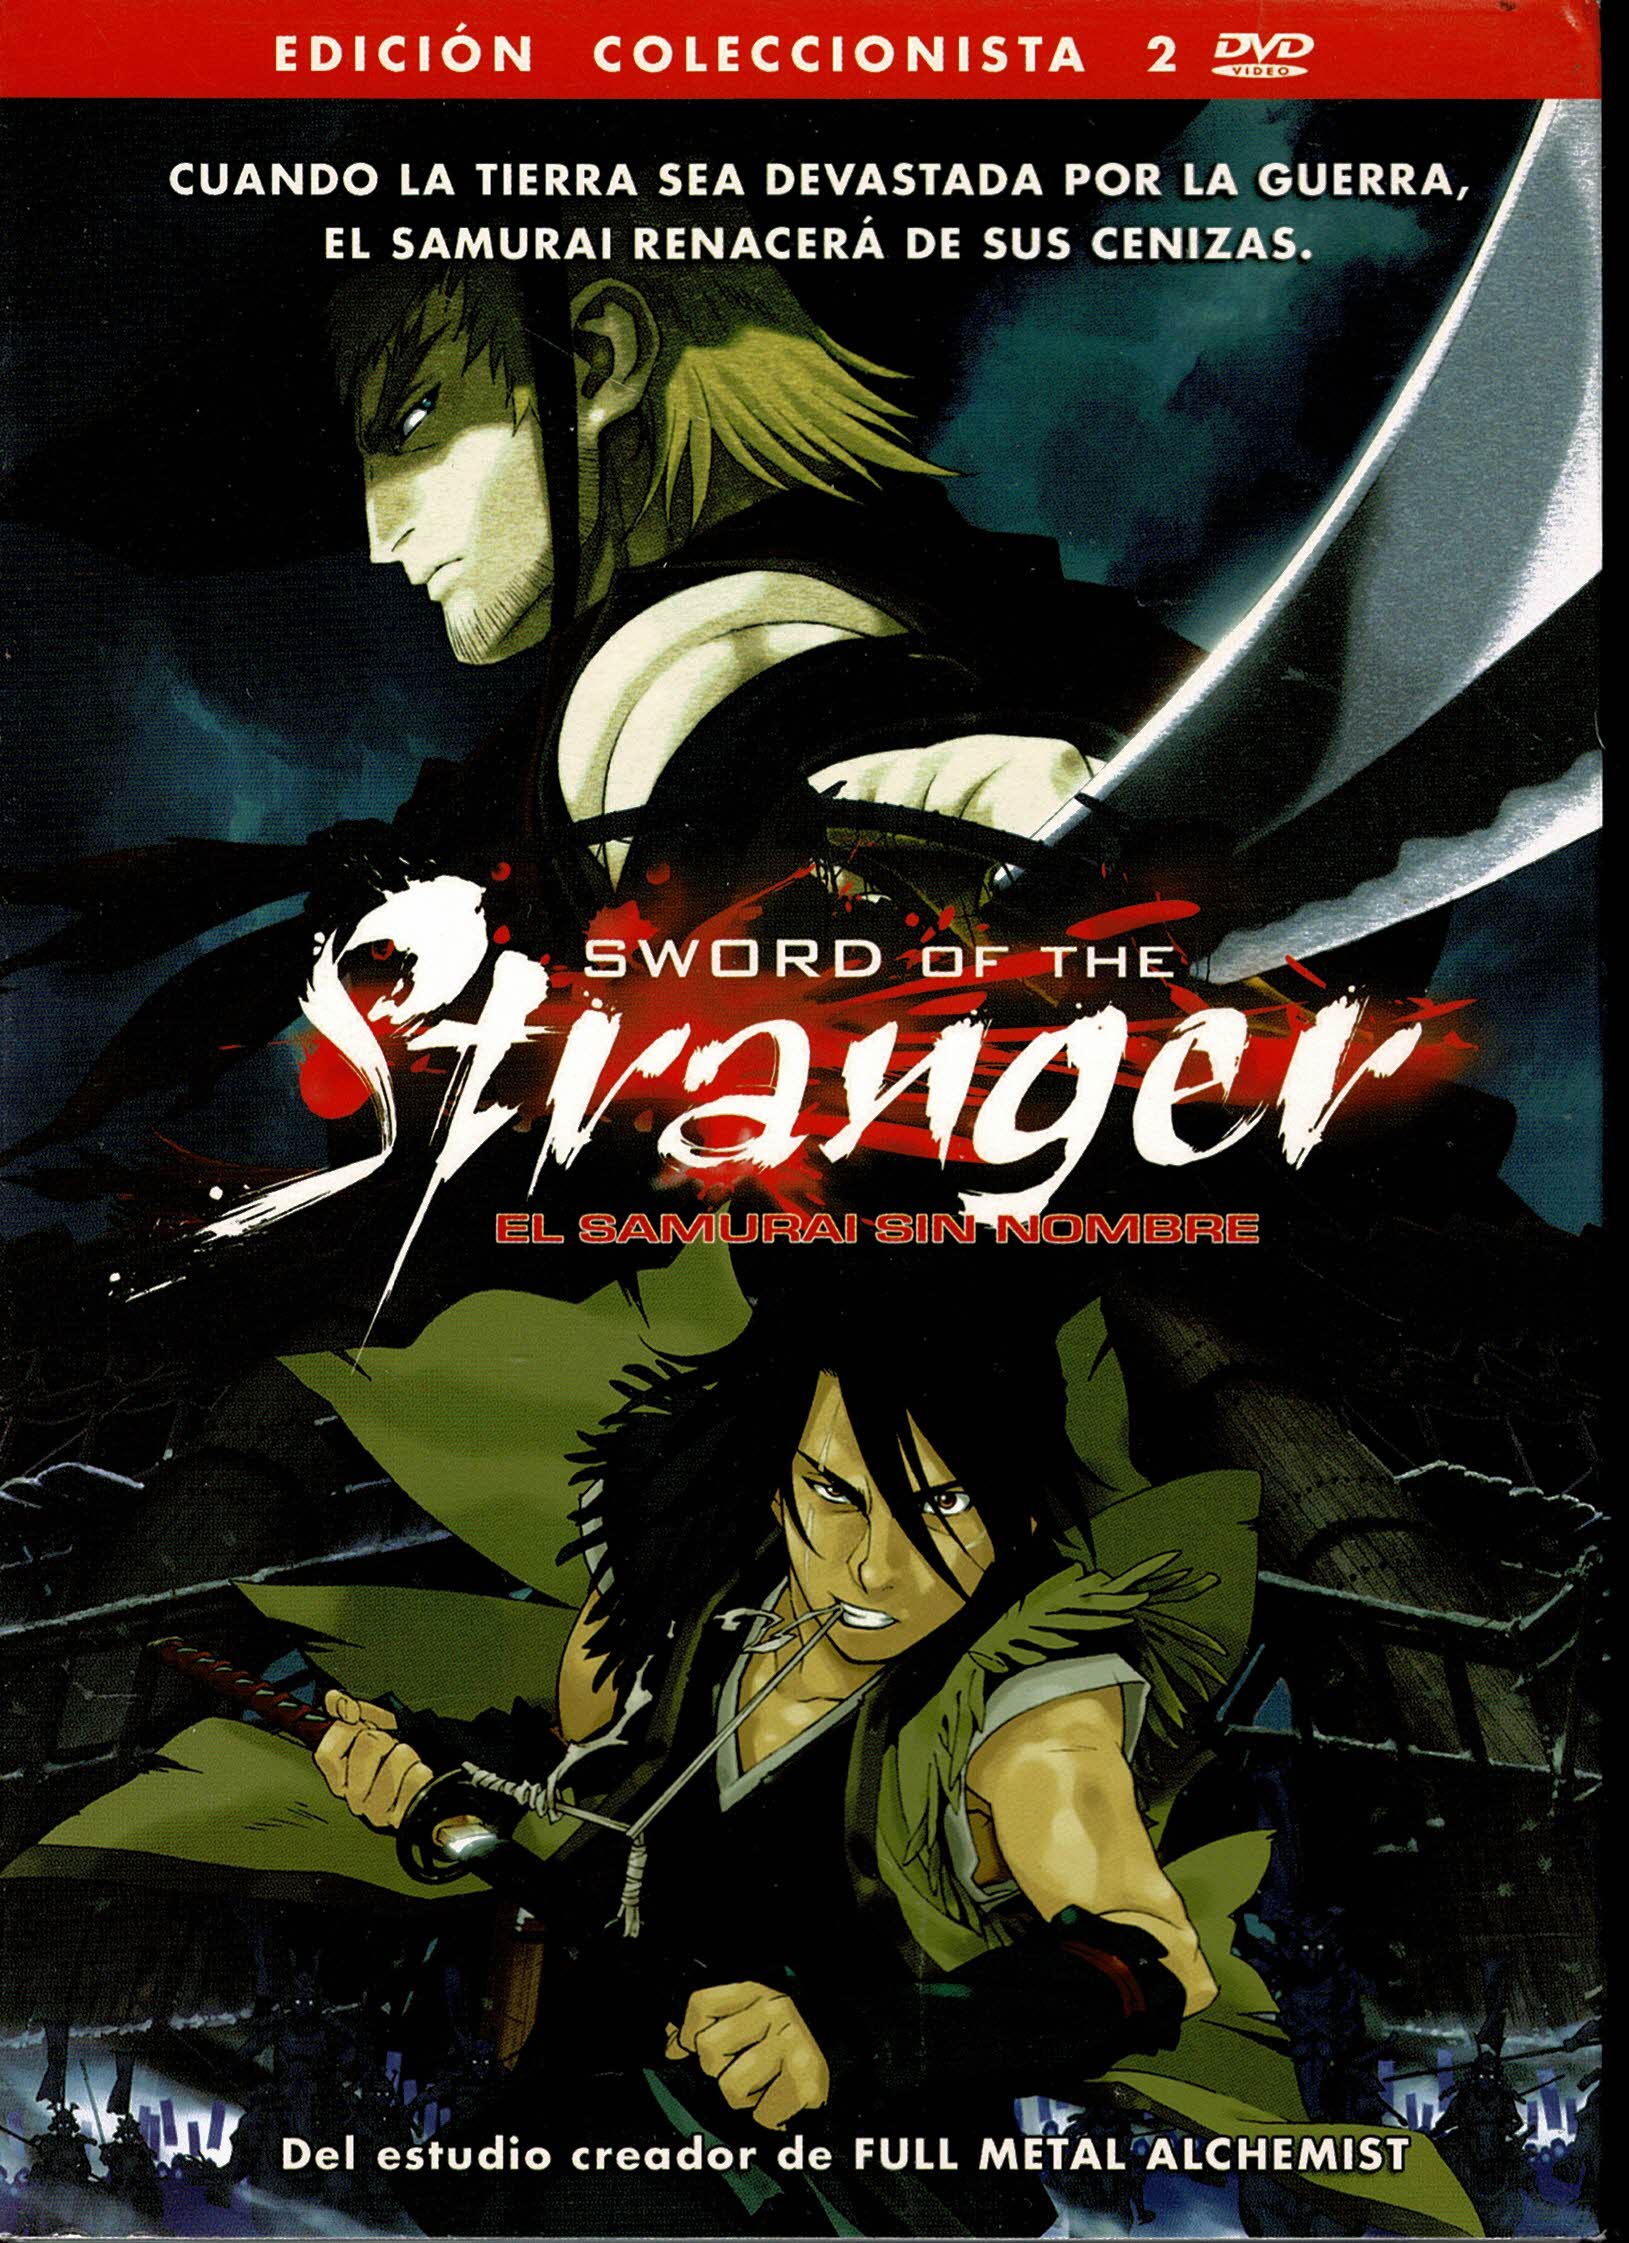 Sword of the stranger  Edición Coleccionista  2 dvd